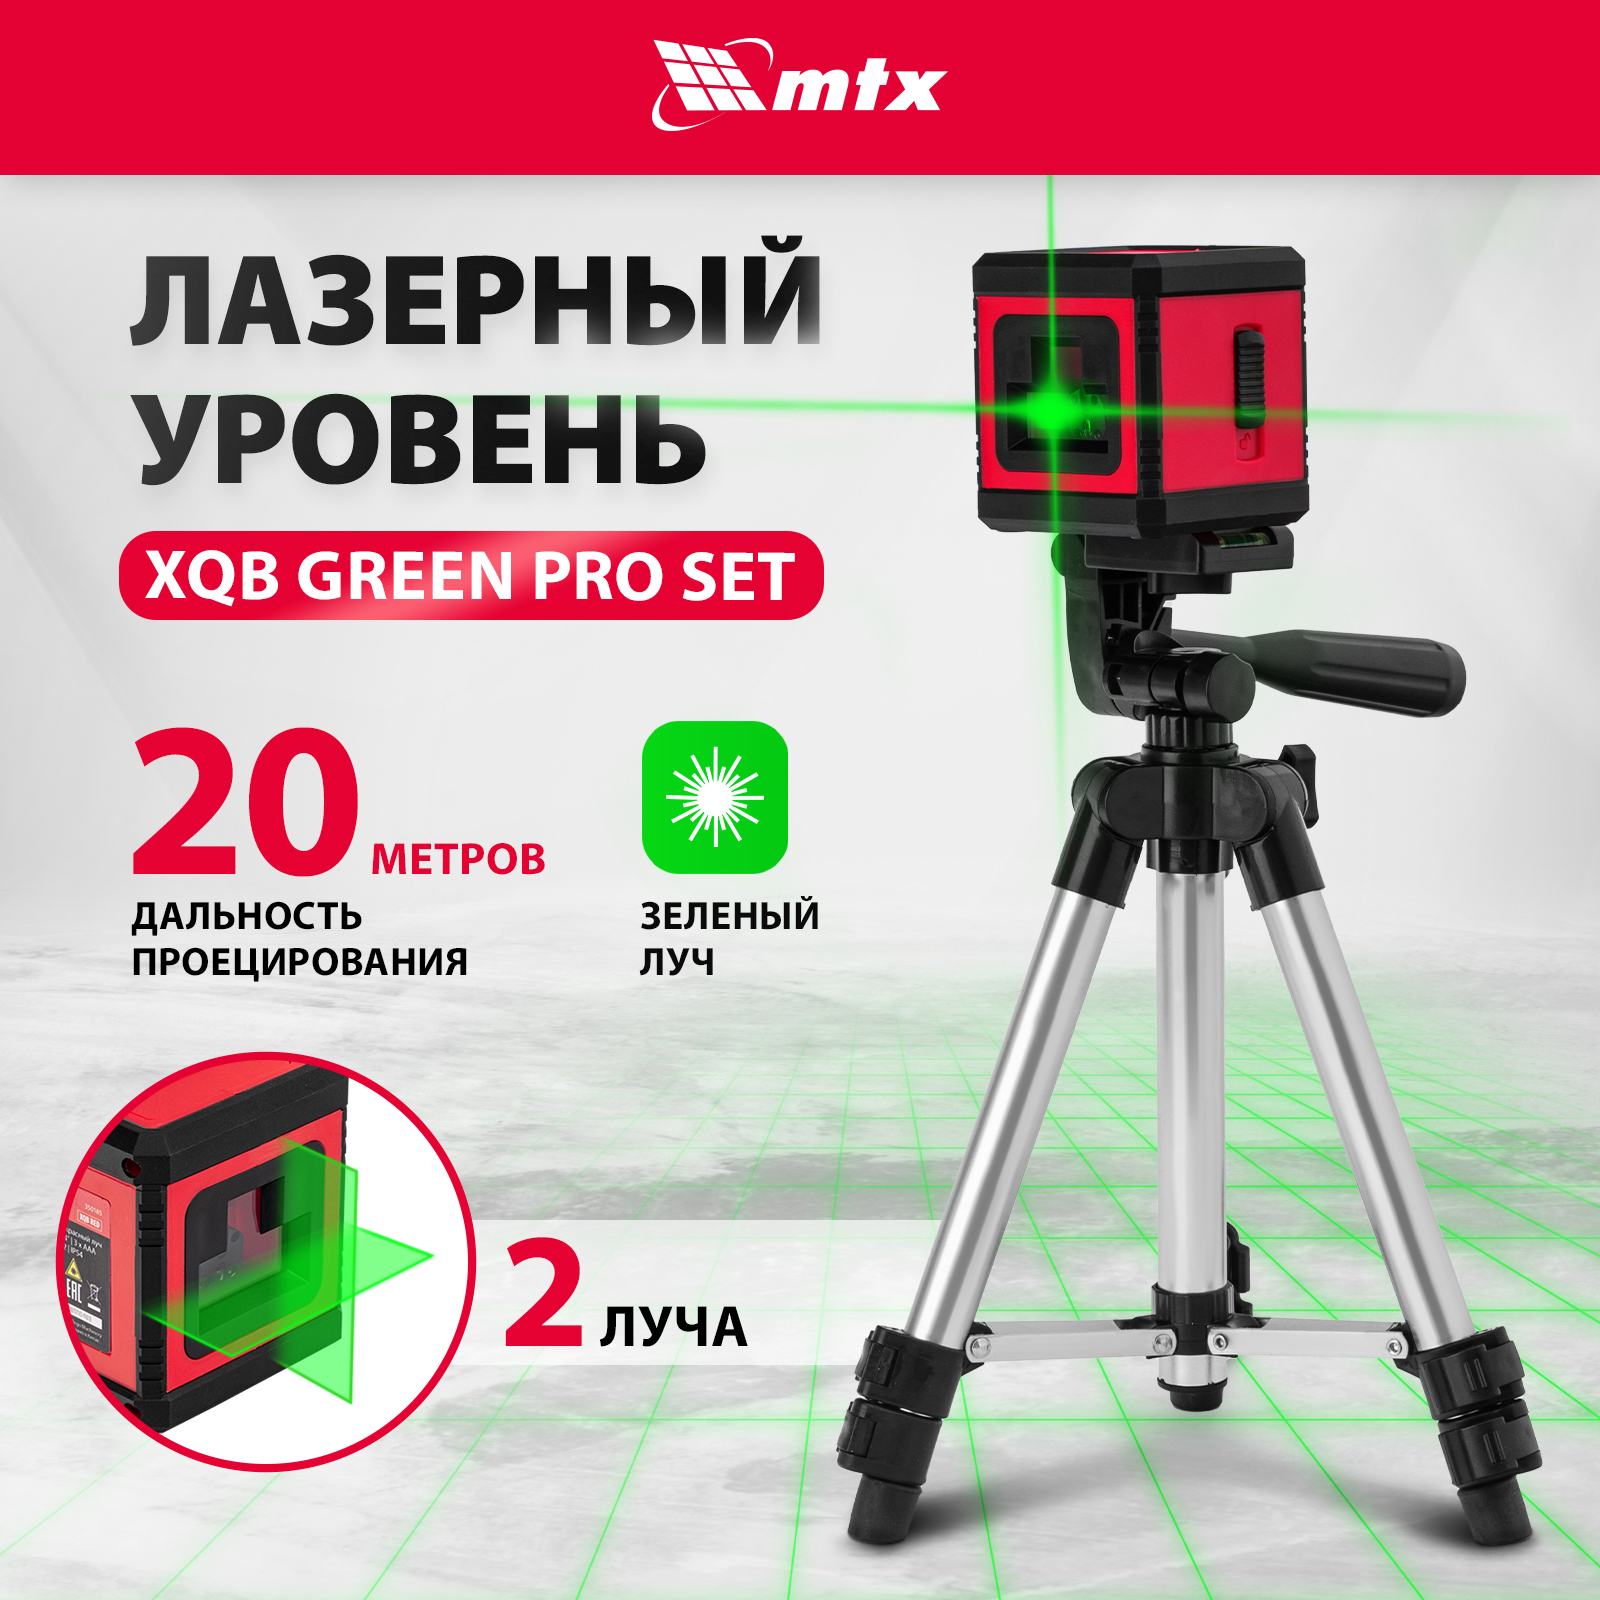 zitrek ll1v1h 2 линии красный луч штатив 1м 065 0177 1 Лазерный уровень MTX XQB GREEN Pro SET, 20 м, зеленый луч, батарейки, штатив 350195